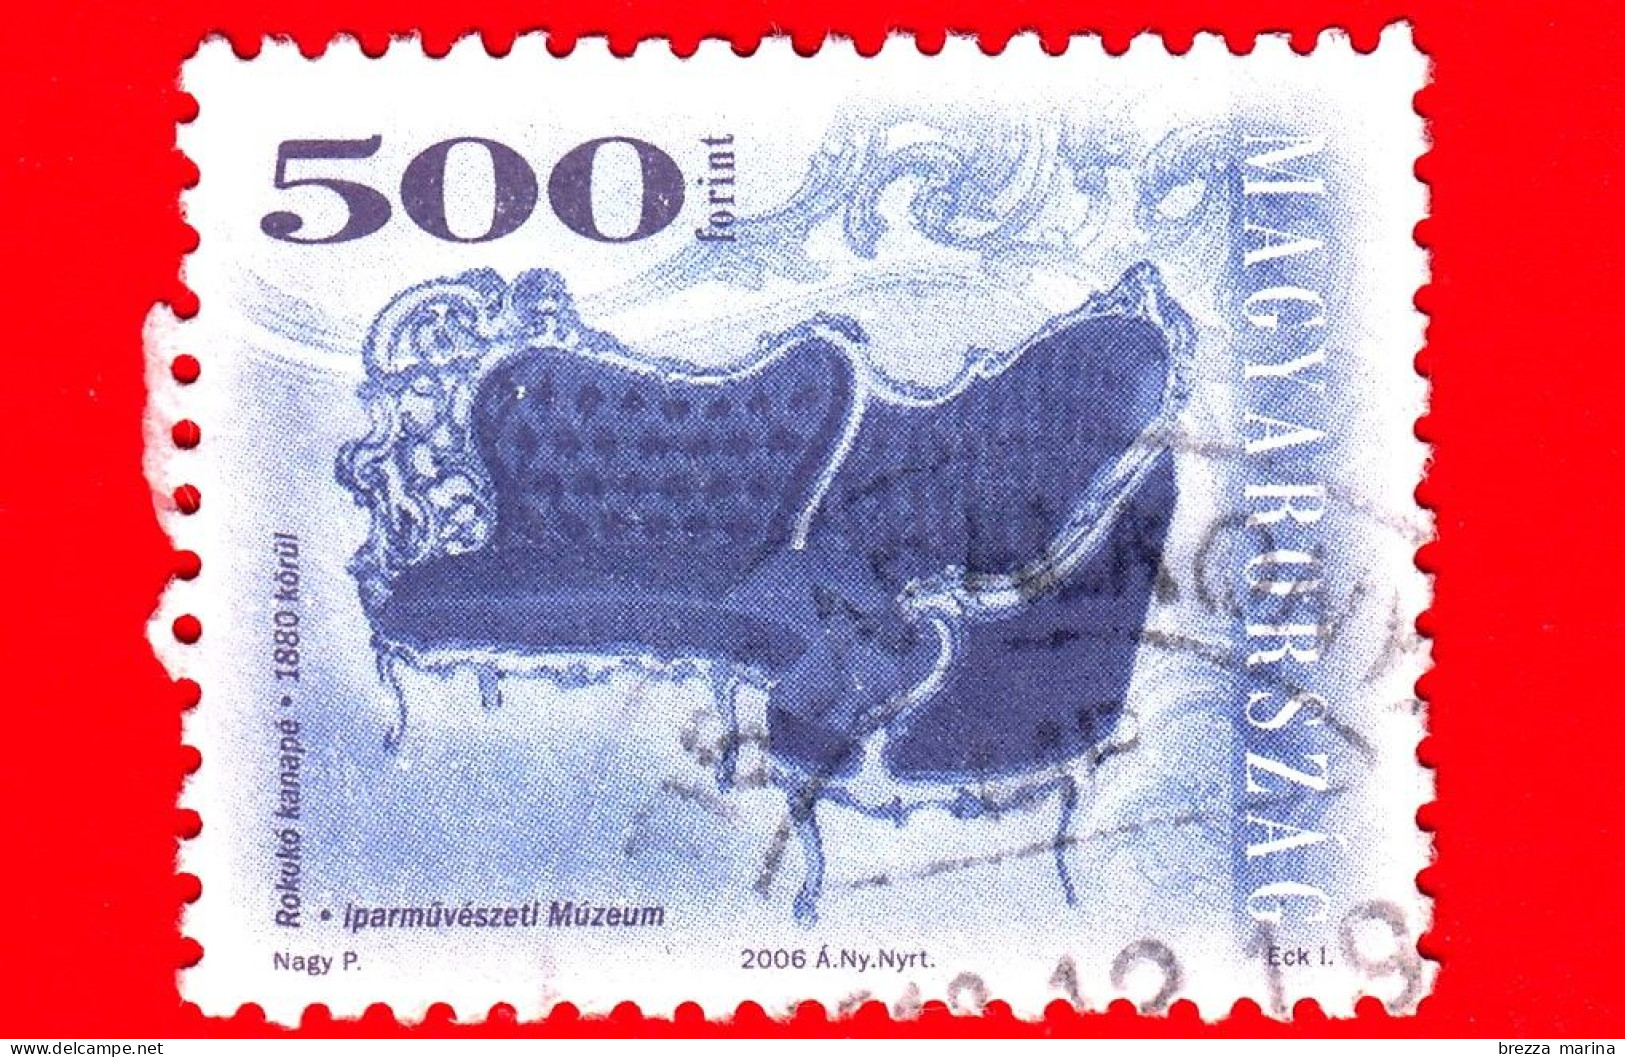 UNGHERIA - MAGYAR - Usato - 2006 - Mobili Antichi - Arredamento - Sedia - Chair - Rococo Style Sofa, 1880 - 500 - Usati